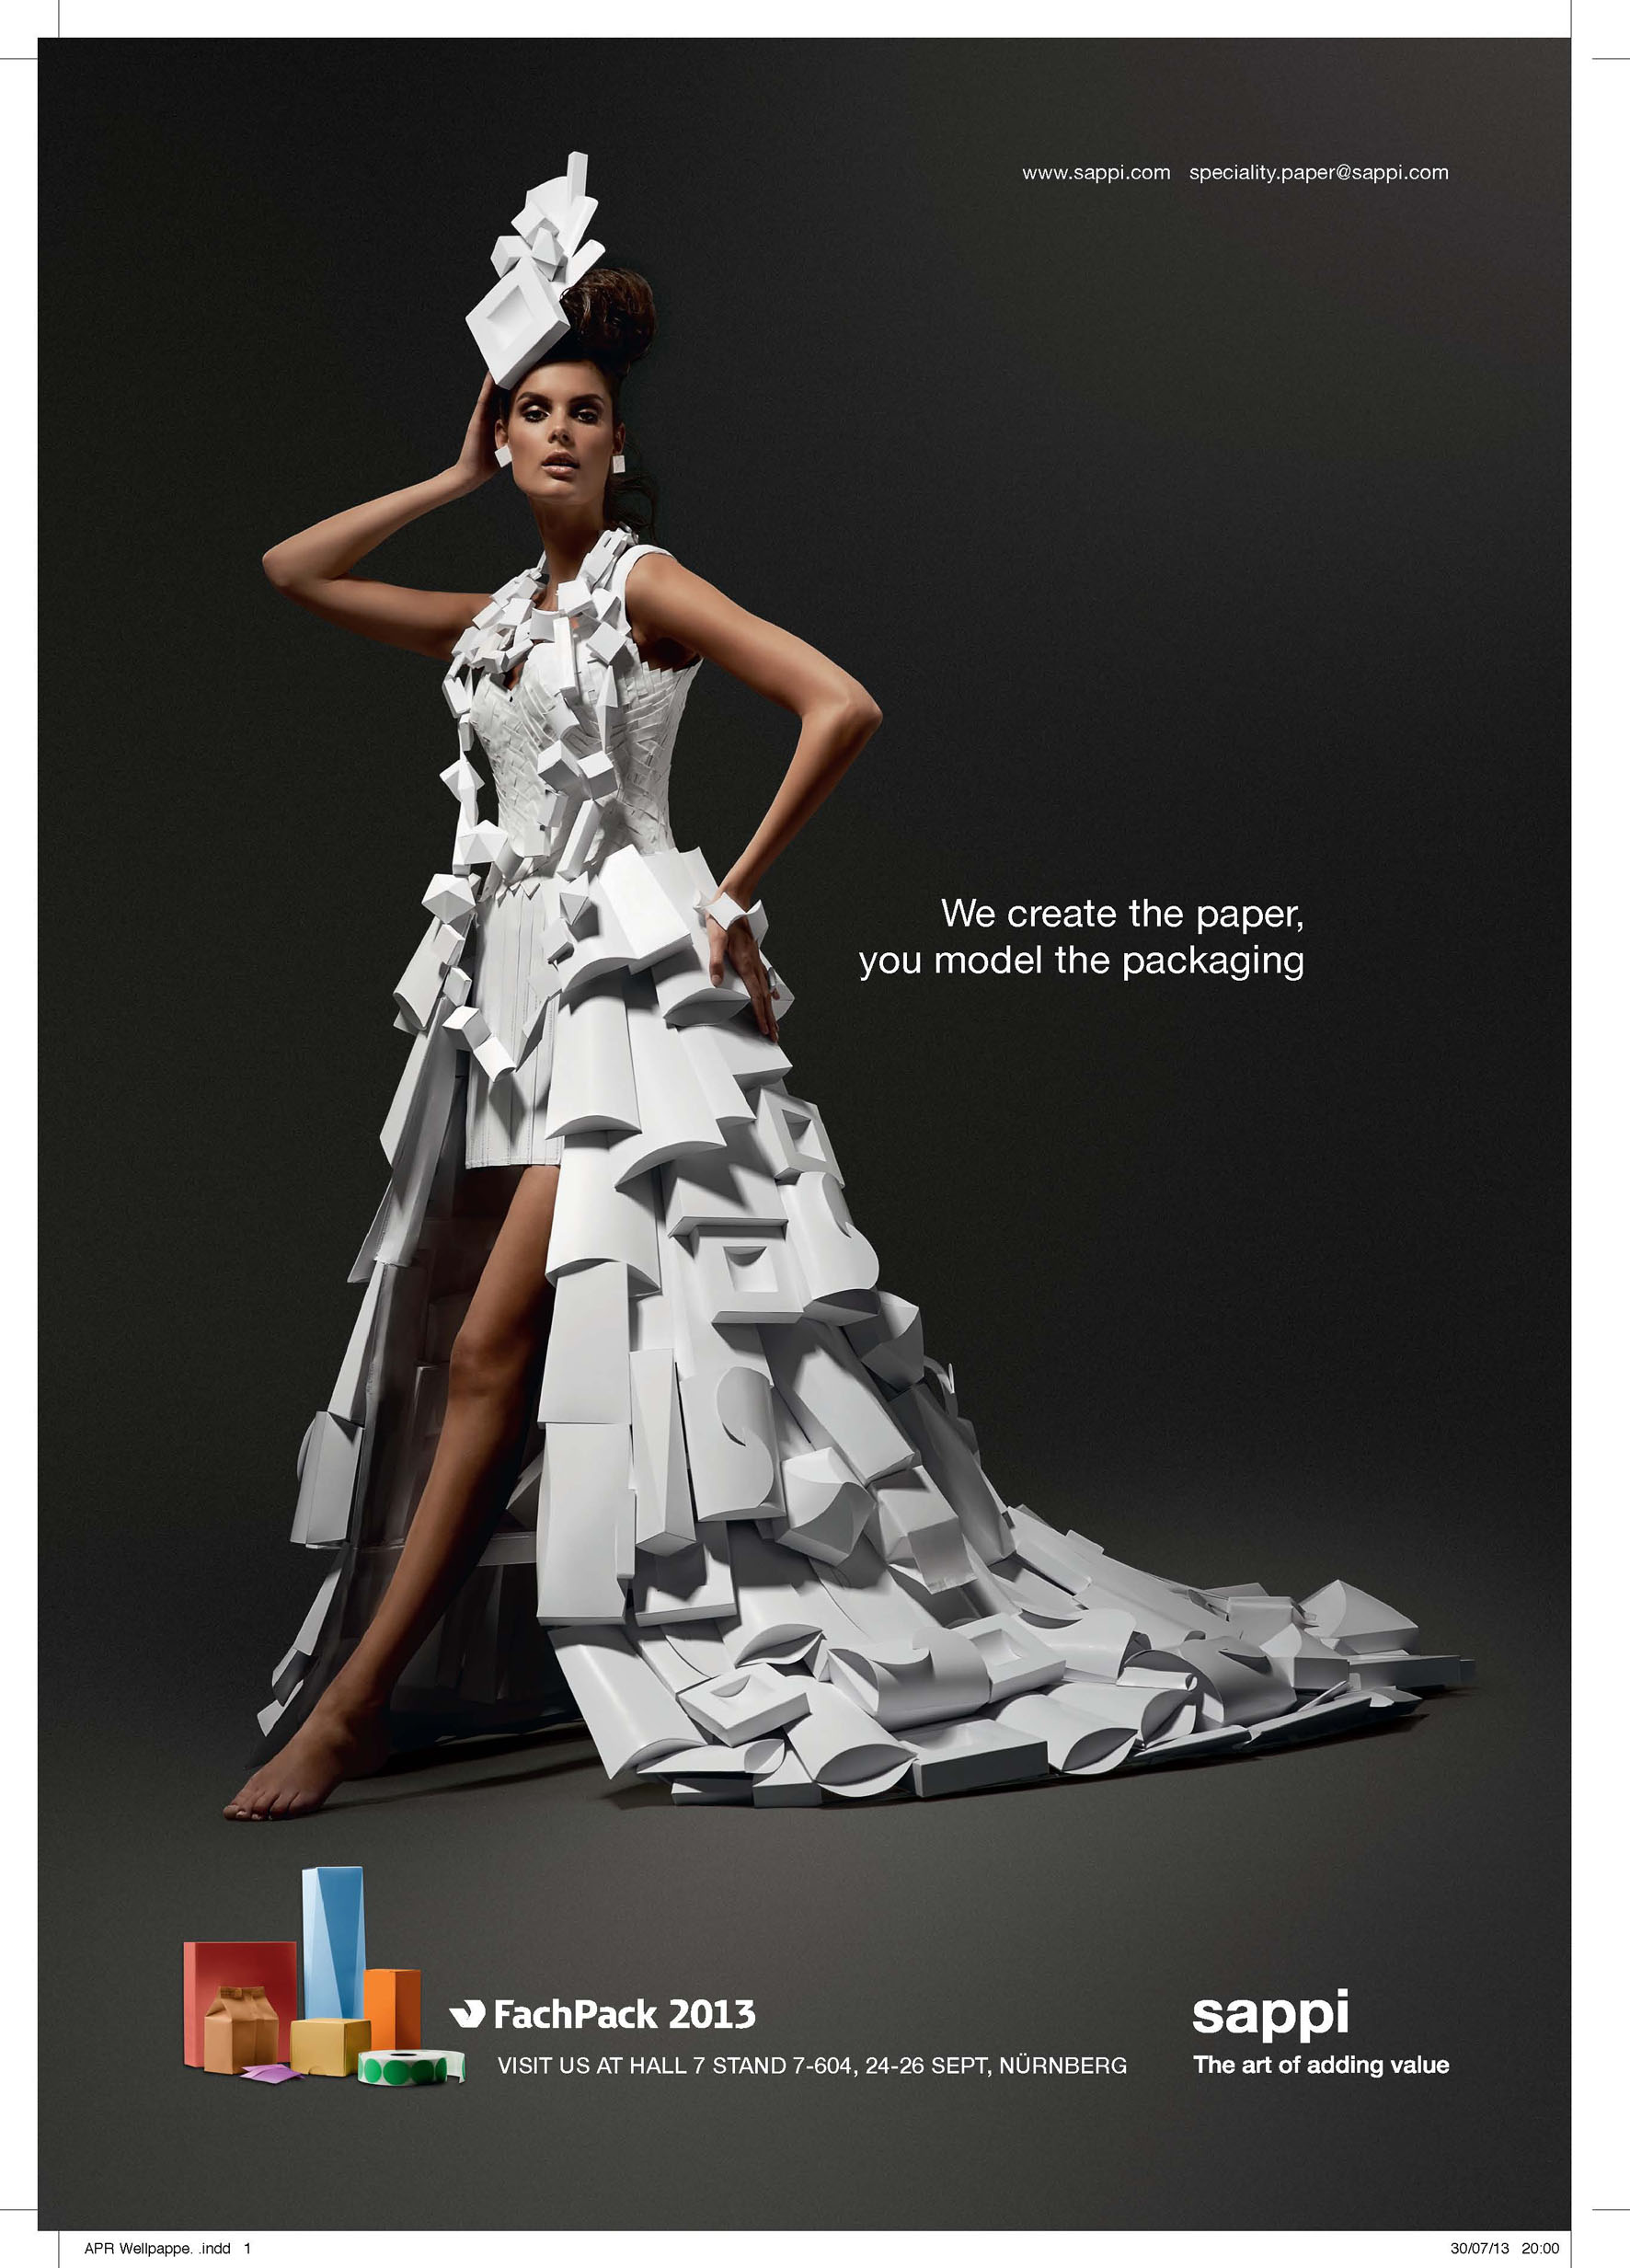 Mode möter förpackning i unik Sappi-kampanj